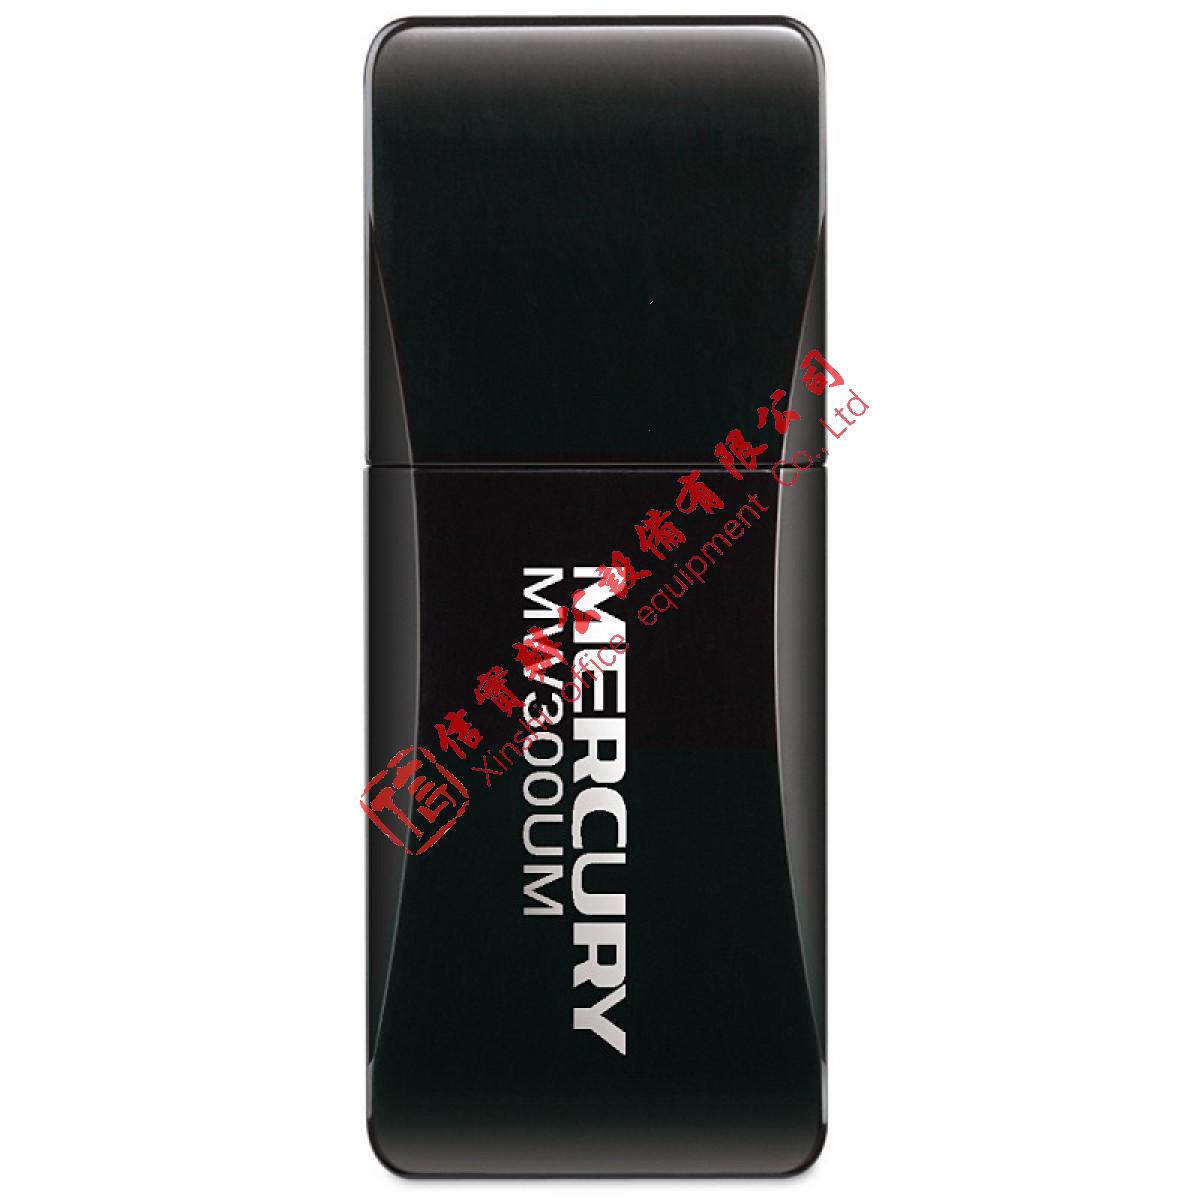 水星（MERCURY) 无线网卡 USB无线网卡 随身WIFI模拟AP网卡 便携式无线网卡 MW300UM 300M迷你USB网卡